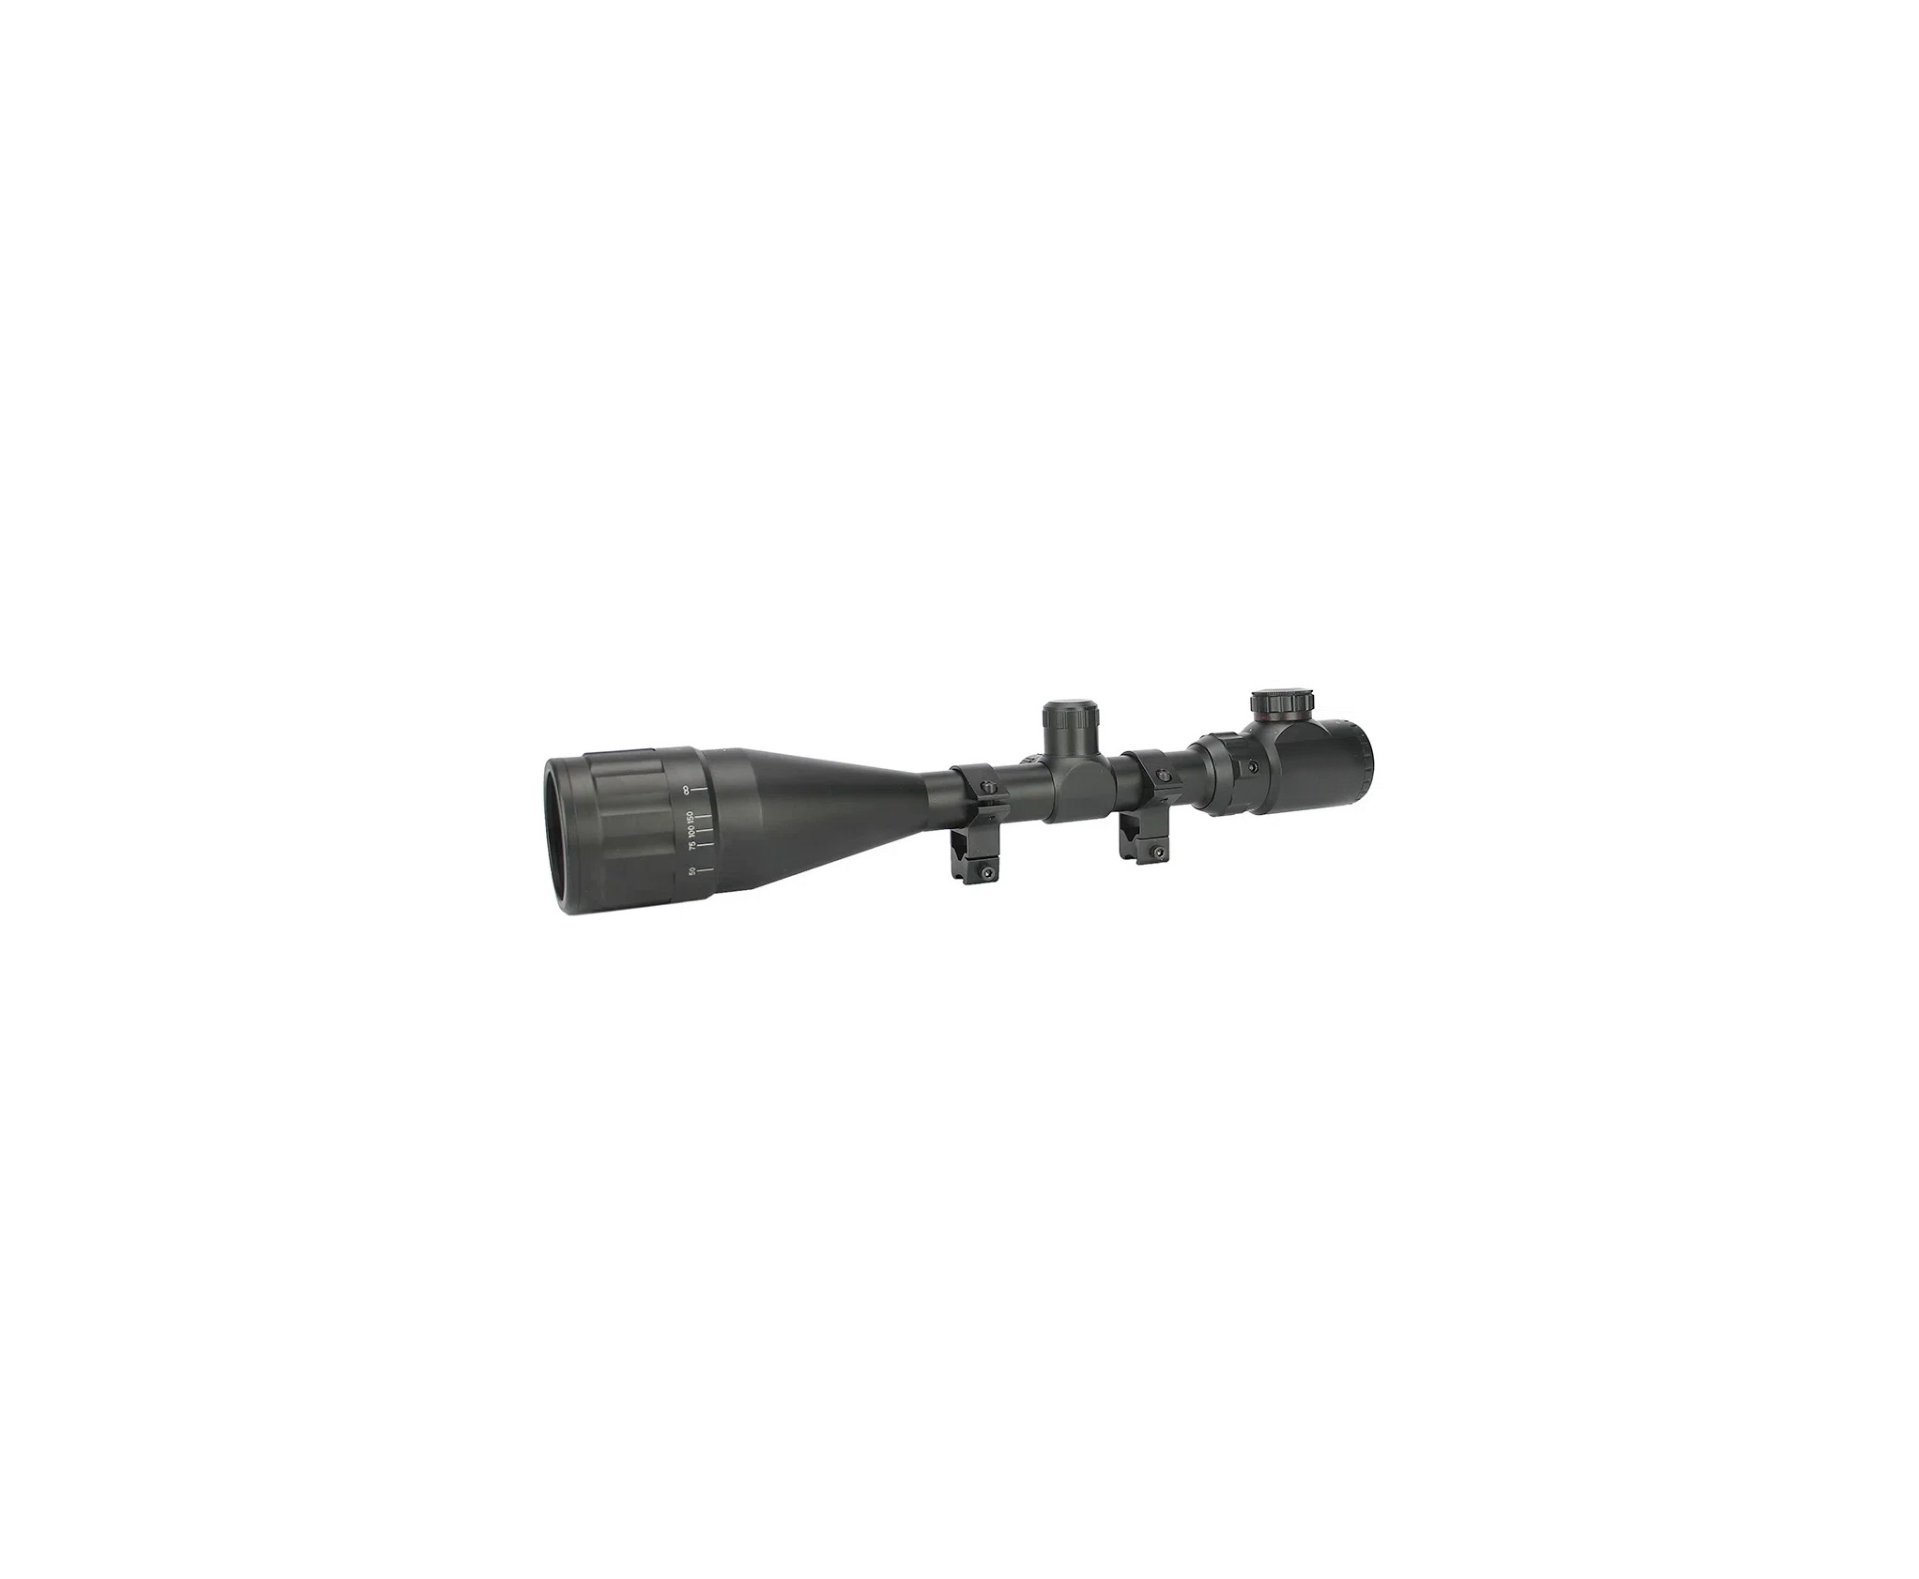 Rifle de Airsoft Sniper M40 A5 VSR10 SA-S03 Core S-Series Black - Specna Arms + BBs 0,25 + Alvos + Óleo de Silicone + Luneta 4-16x50